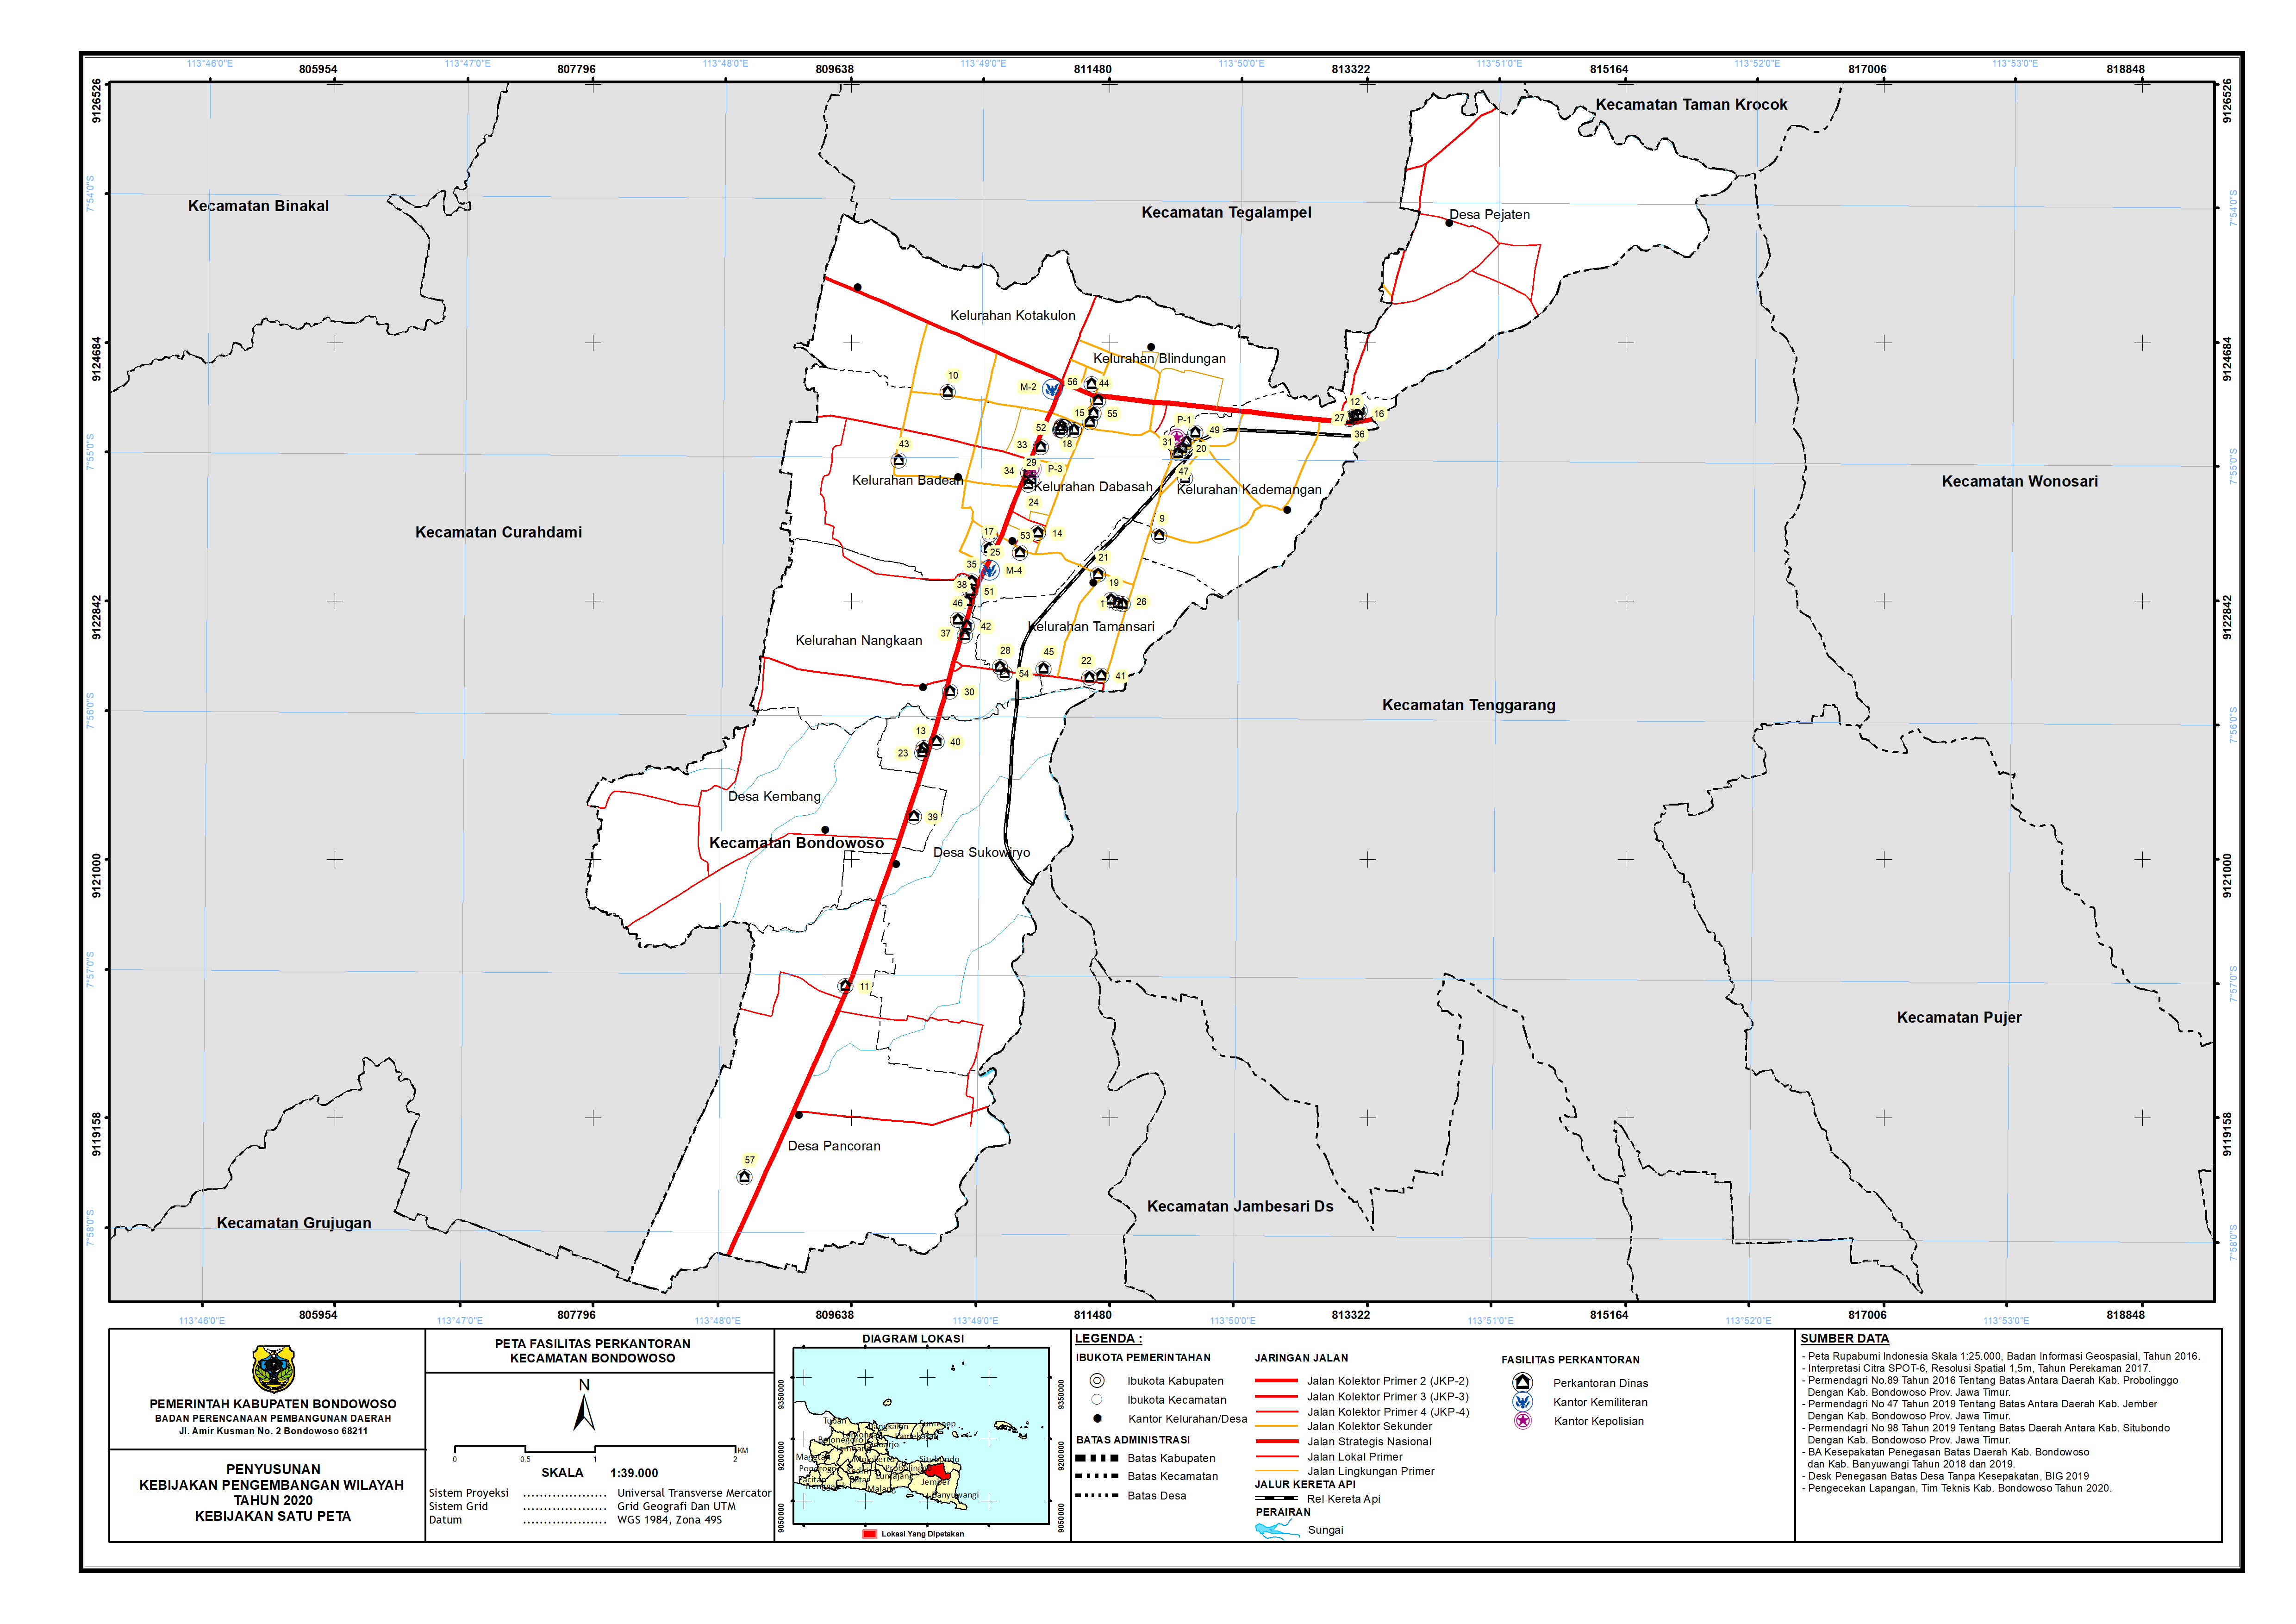 Peta Persebaran Perkantoran Kecamatan Bondowoso.png